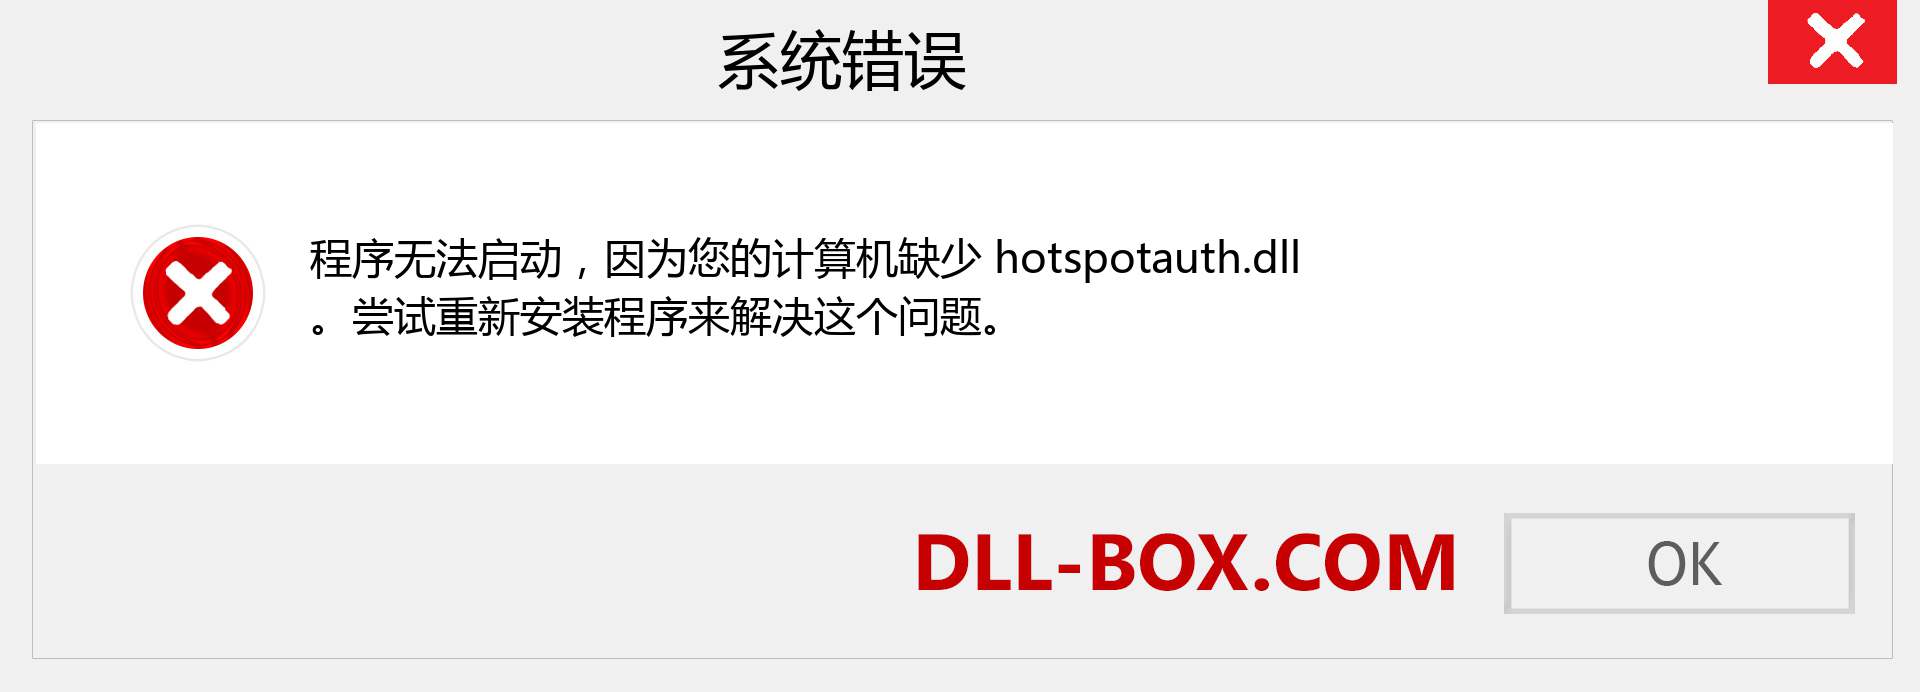 hotspotauth.dll 文件丢失？。 适用于 Windows 7、8、10 的下载 - 修复 Windows、照片、图像上的 hotspotauth dll 丢失错误